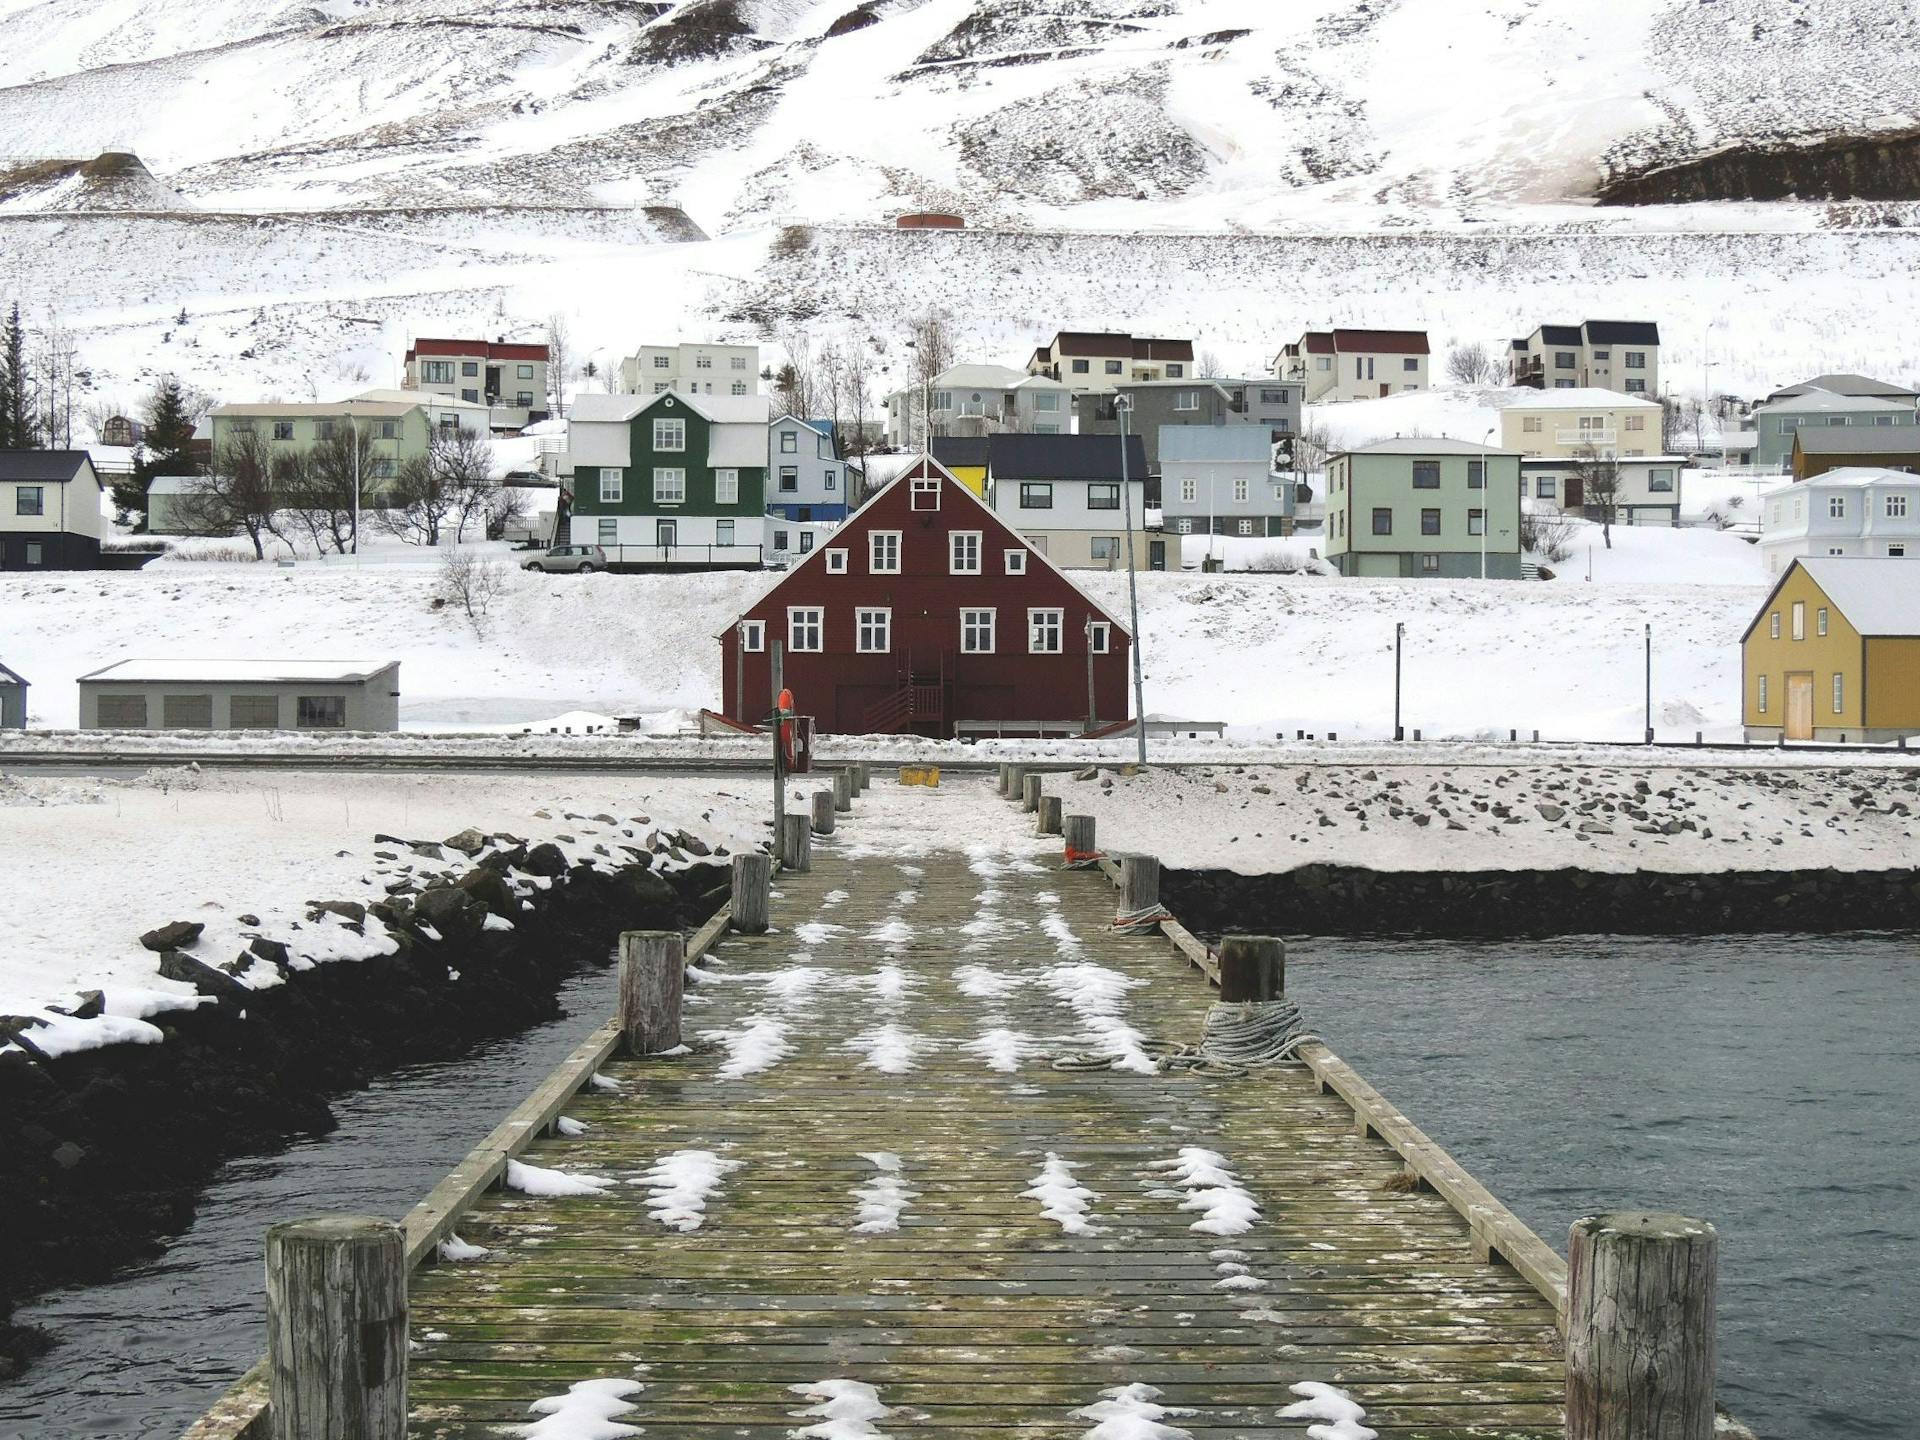 Houses in Siglufjörður on a snowy day. 